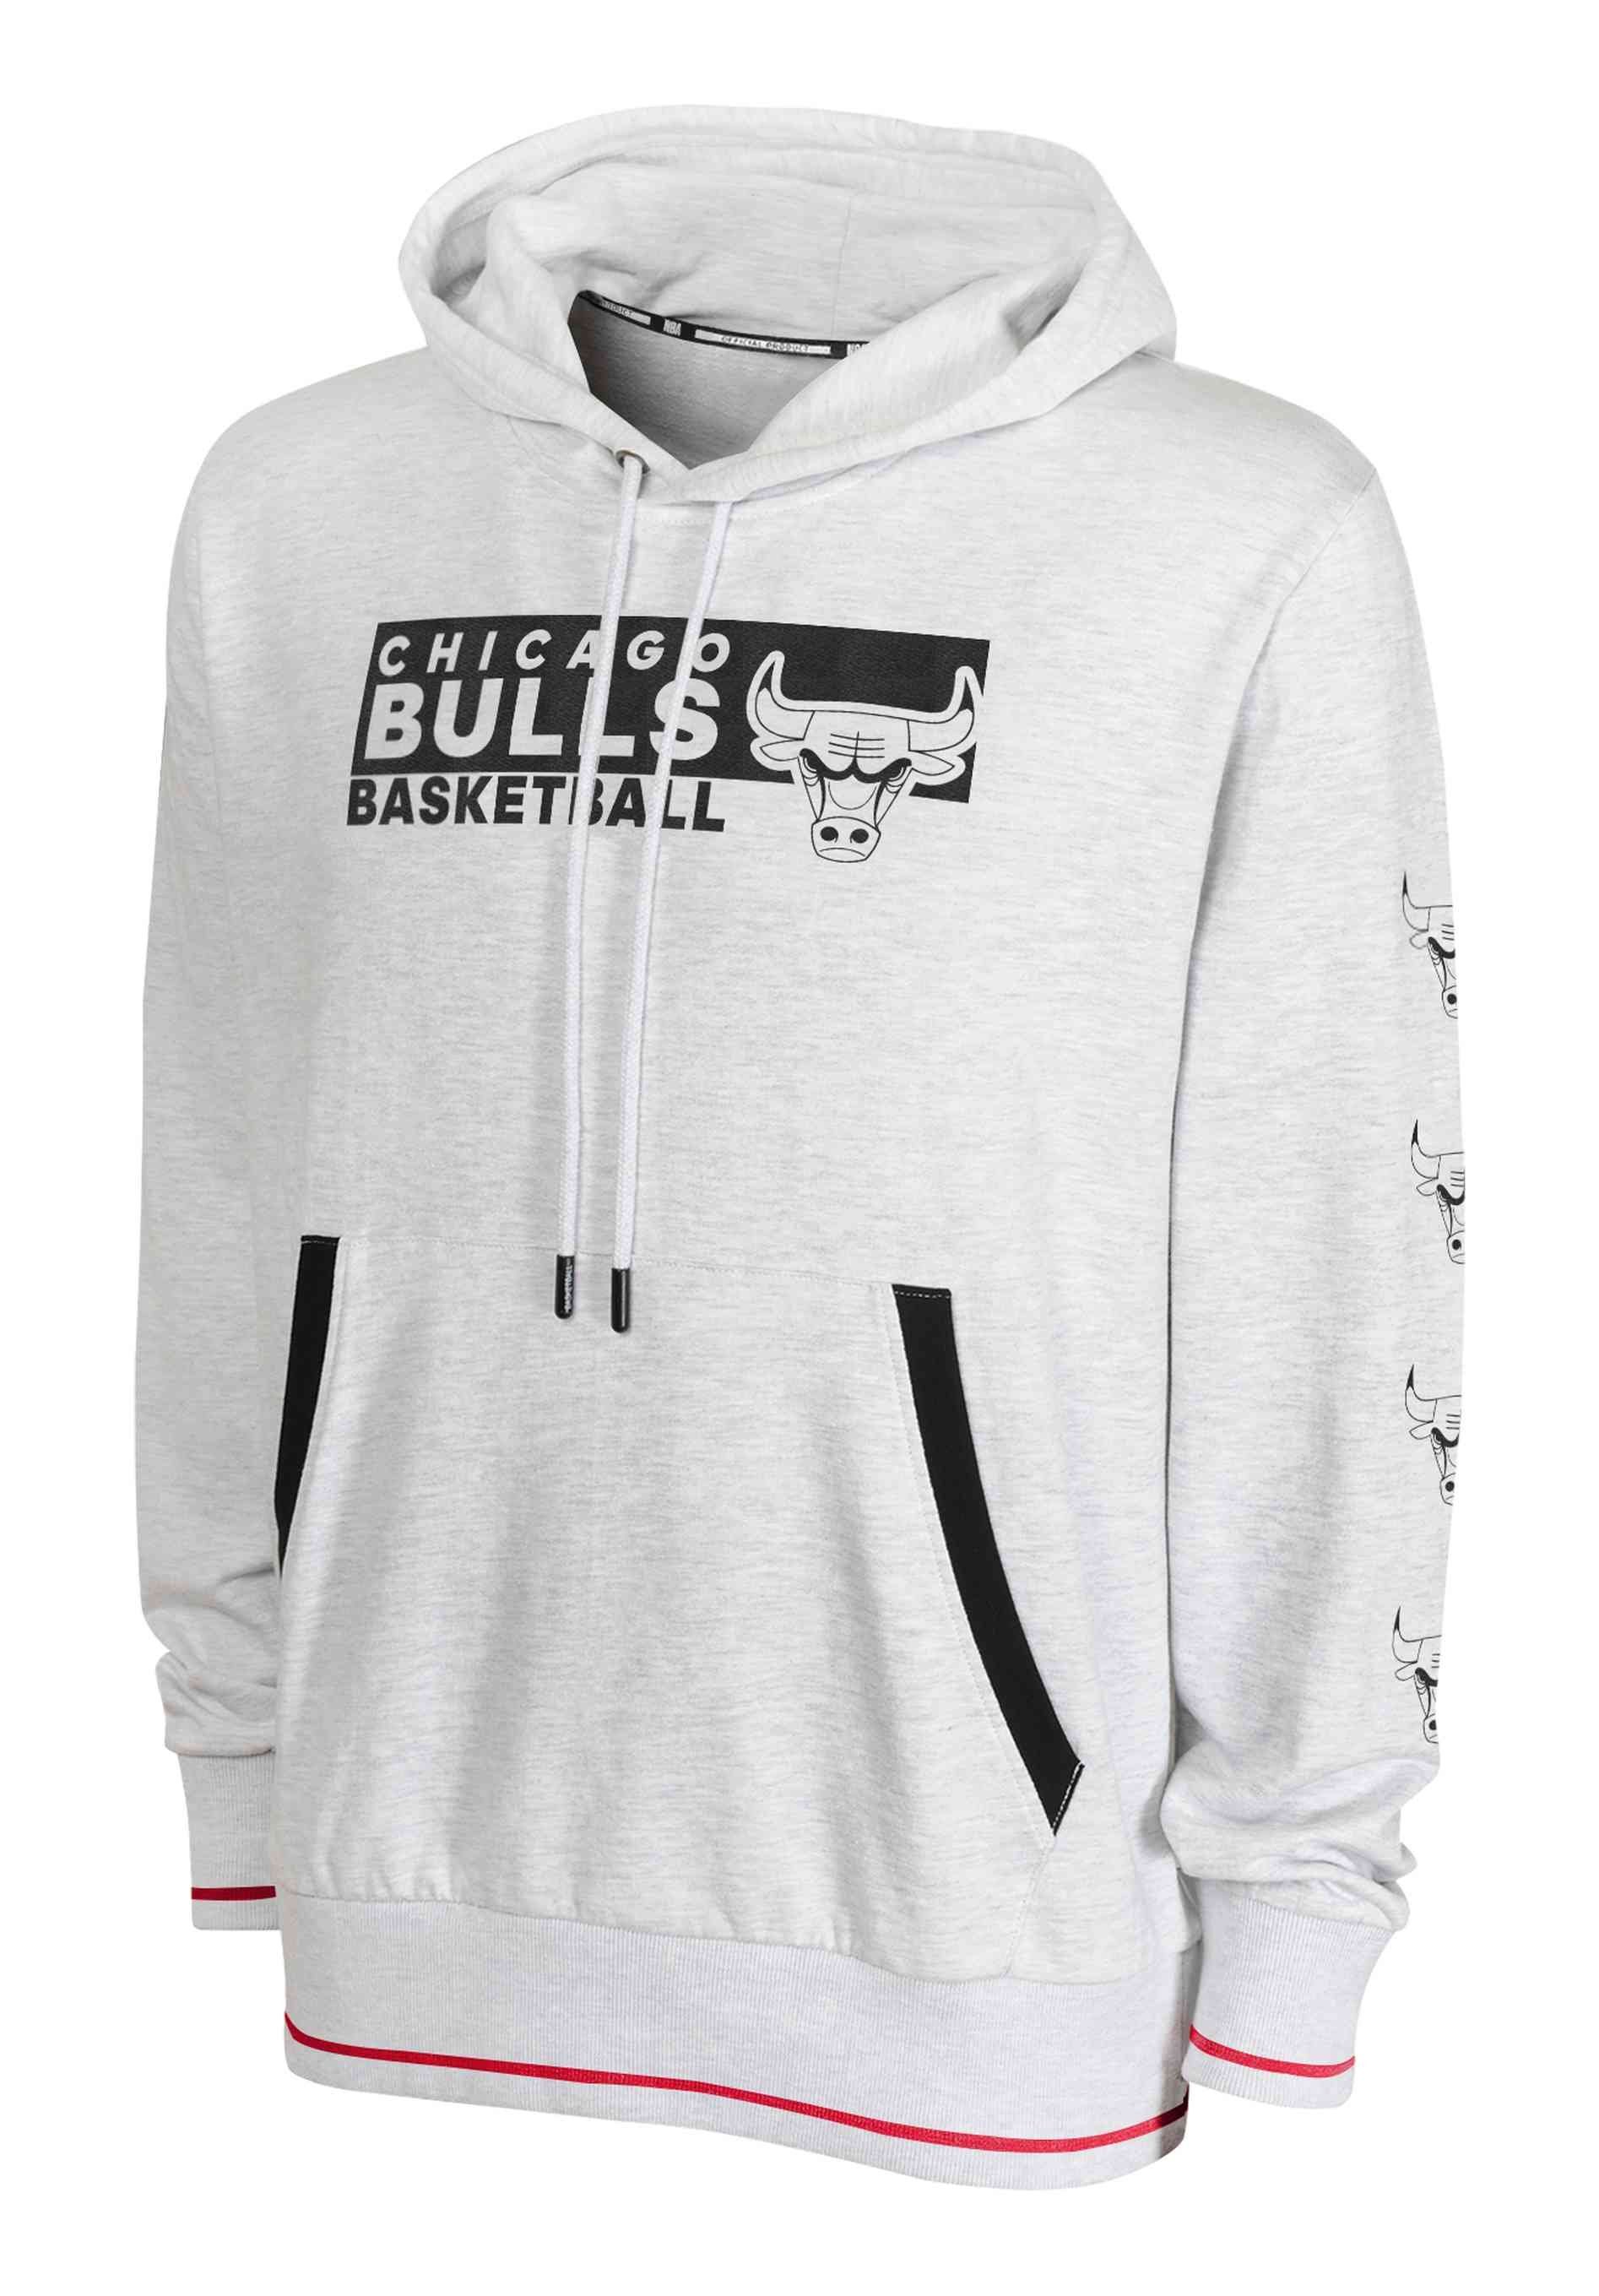 Outerstuff Hoodie NBA Chicago Bulls Team Sweatshirt Lavine Zach